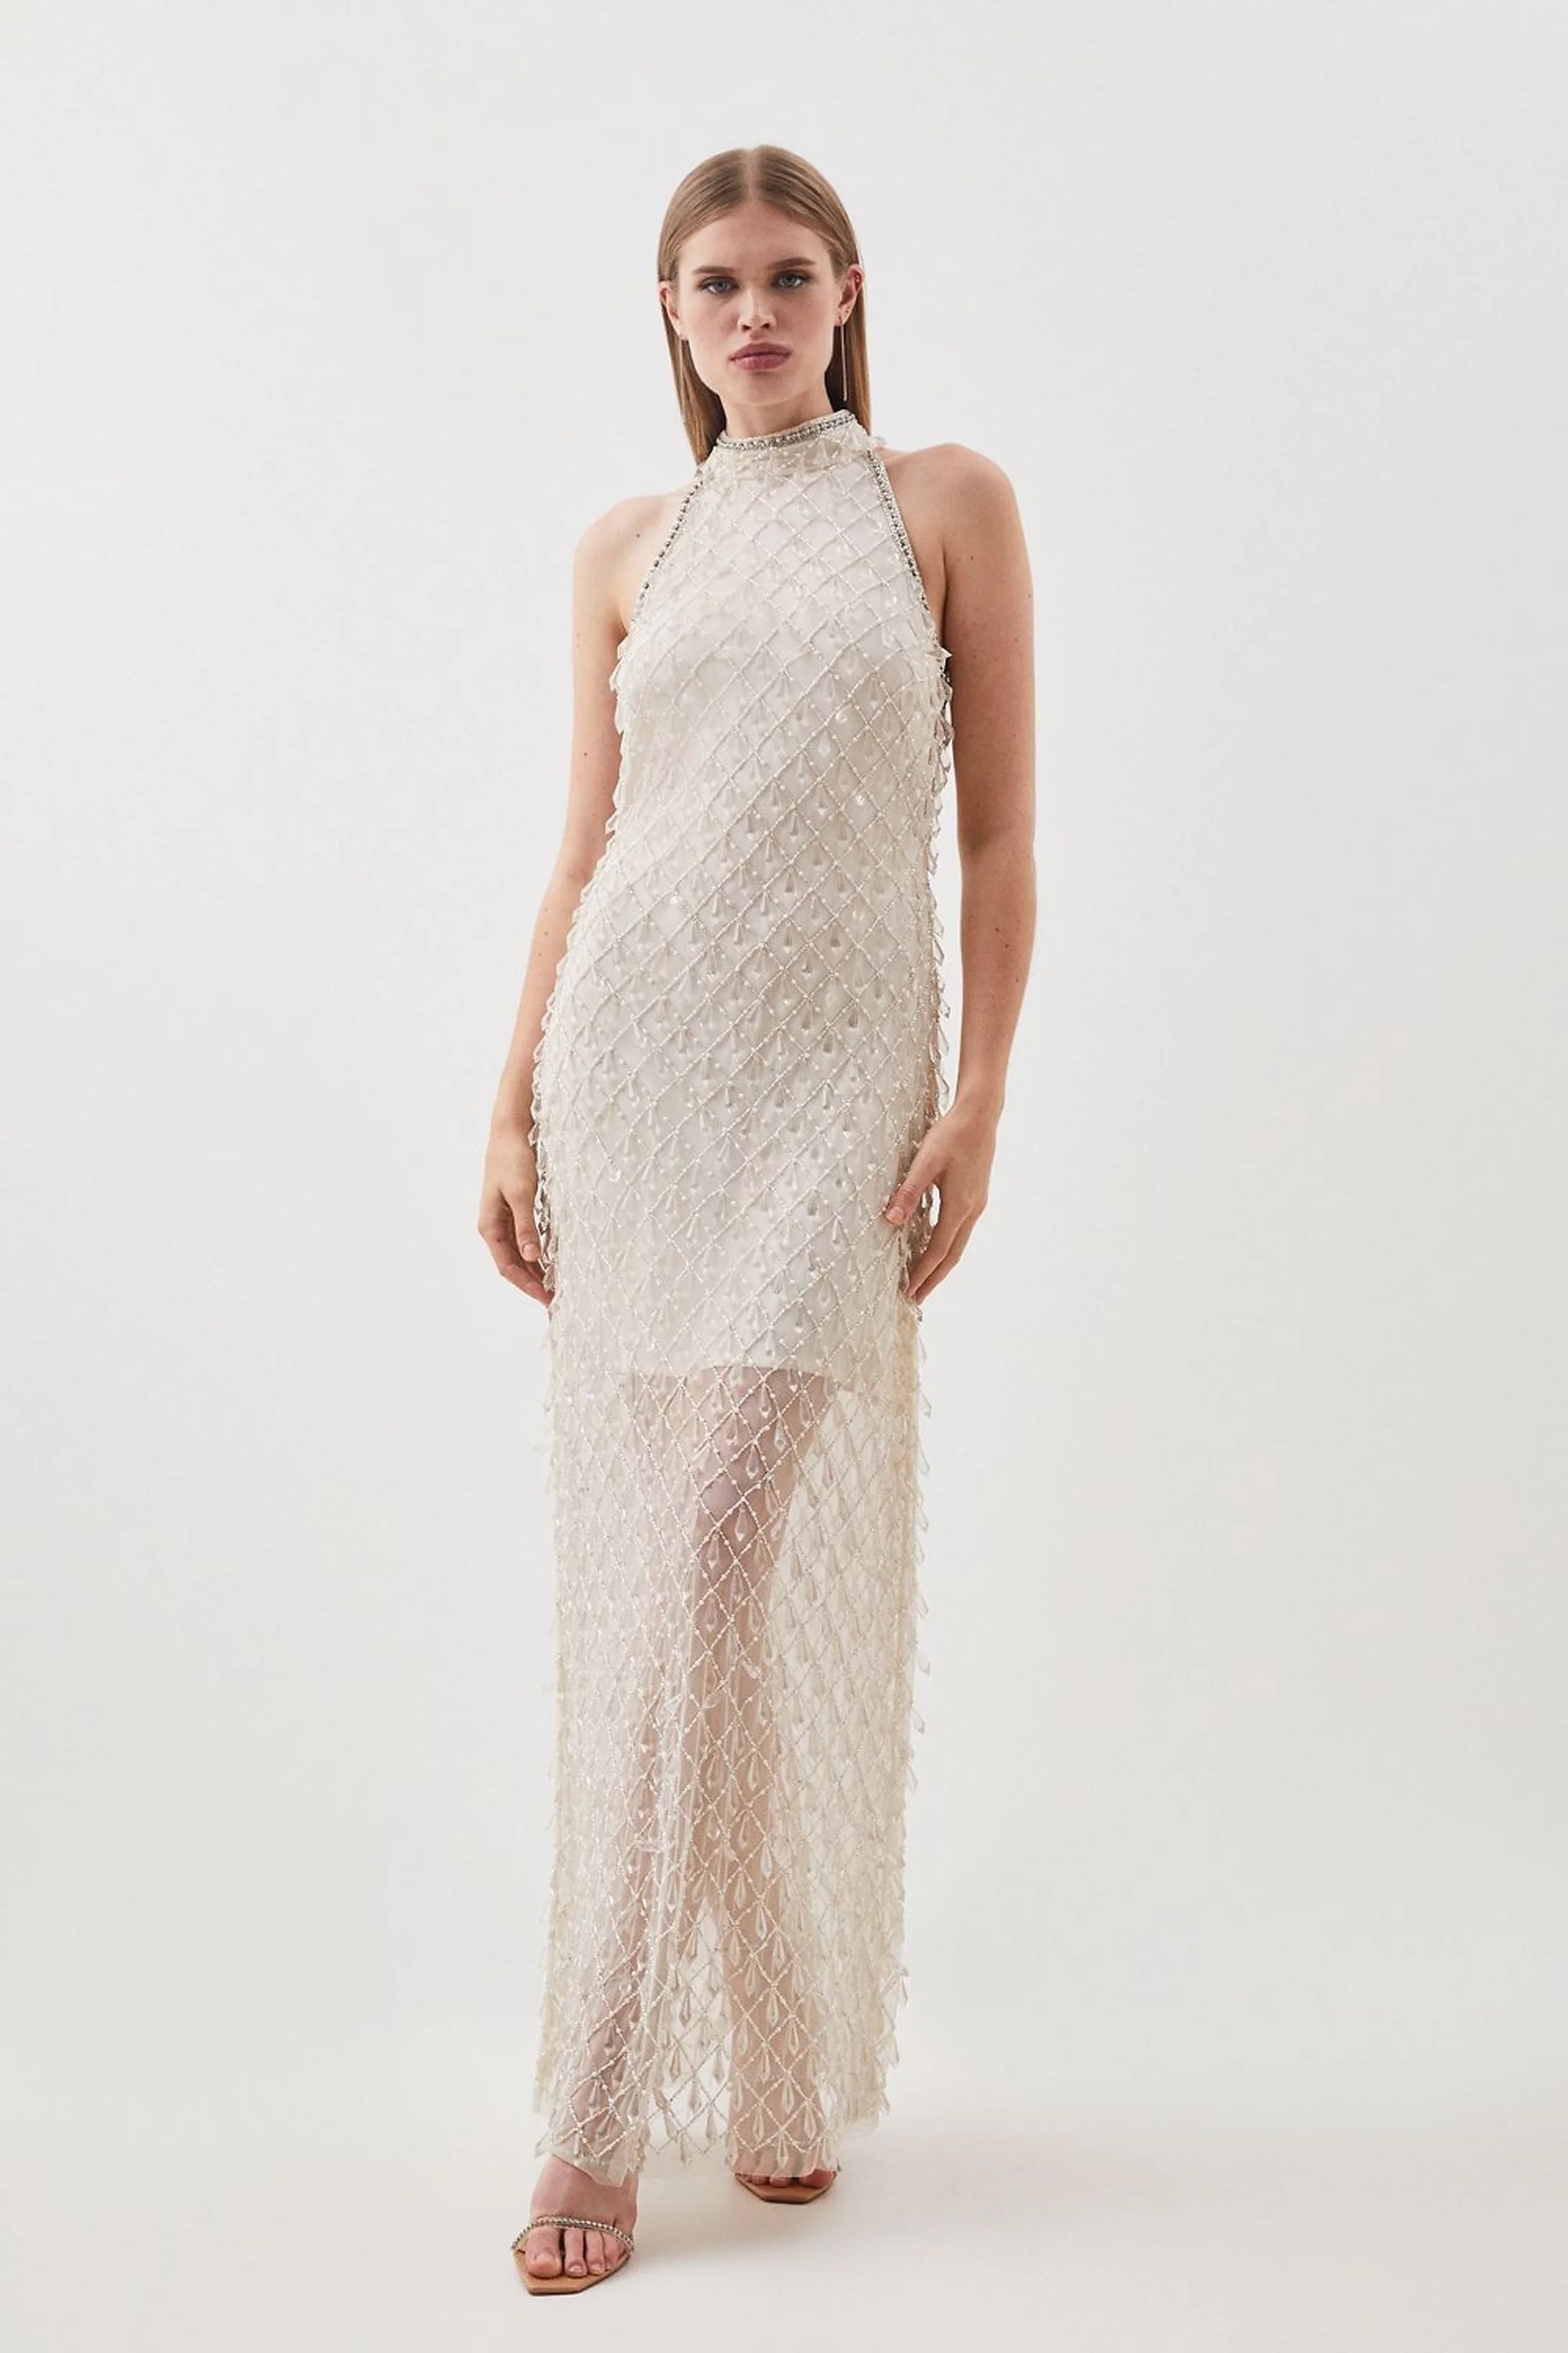 Halter Embellished Woven Maxi Dress | Karen Millen UK + IE + DE + NL